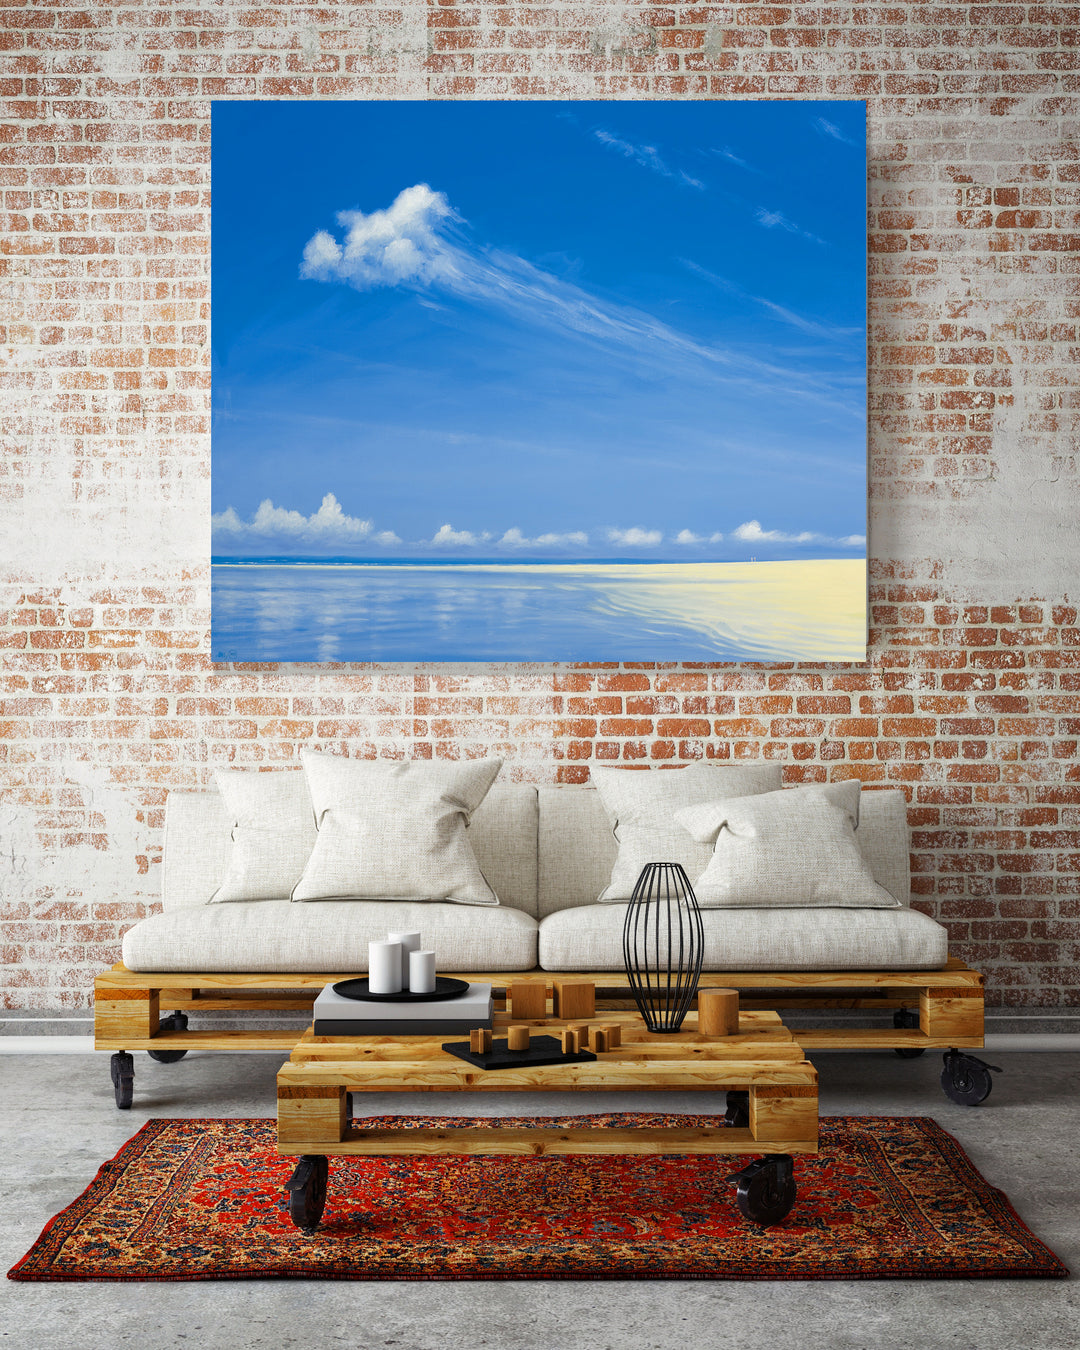 Shoreline On Alphonse painting by Derek Hare - Living room showcase